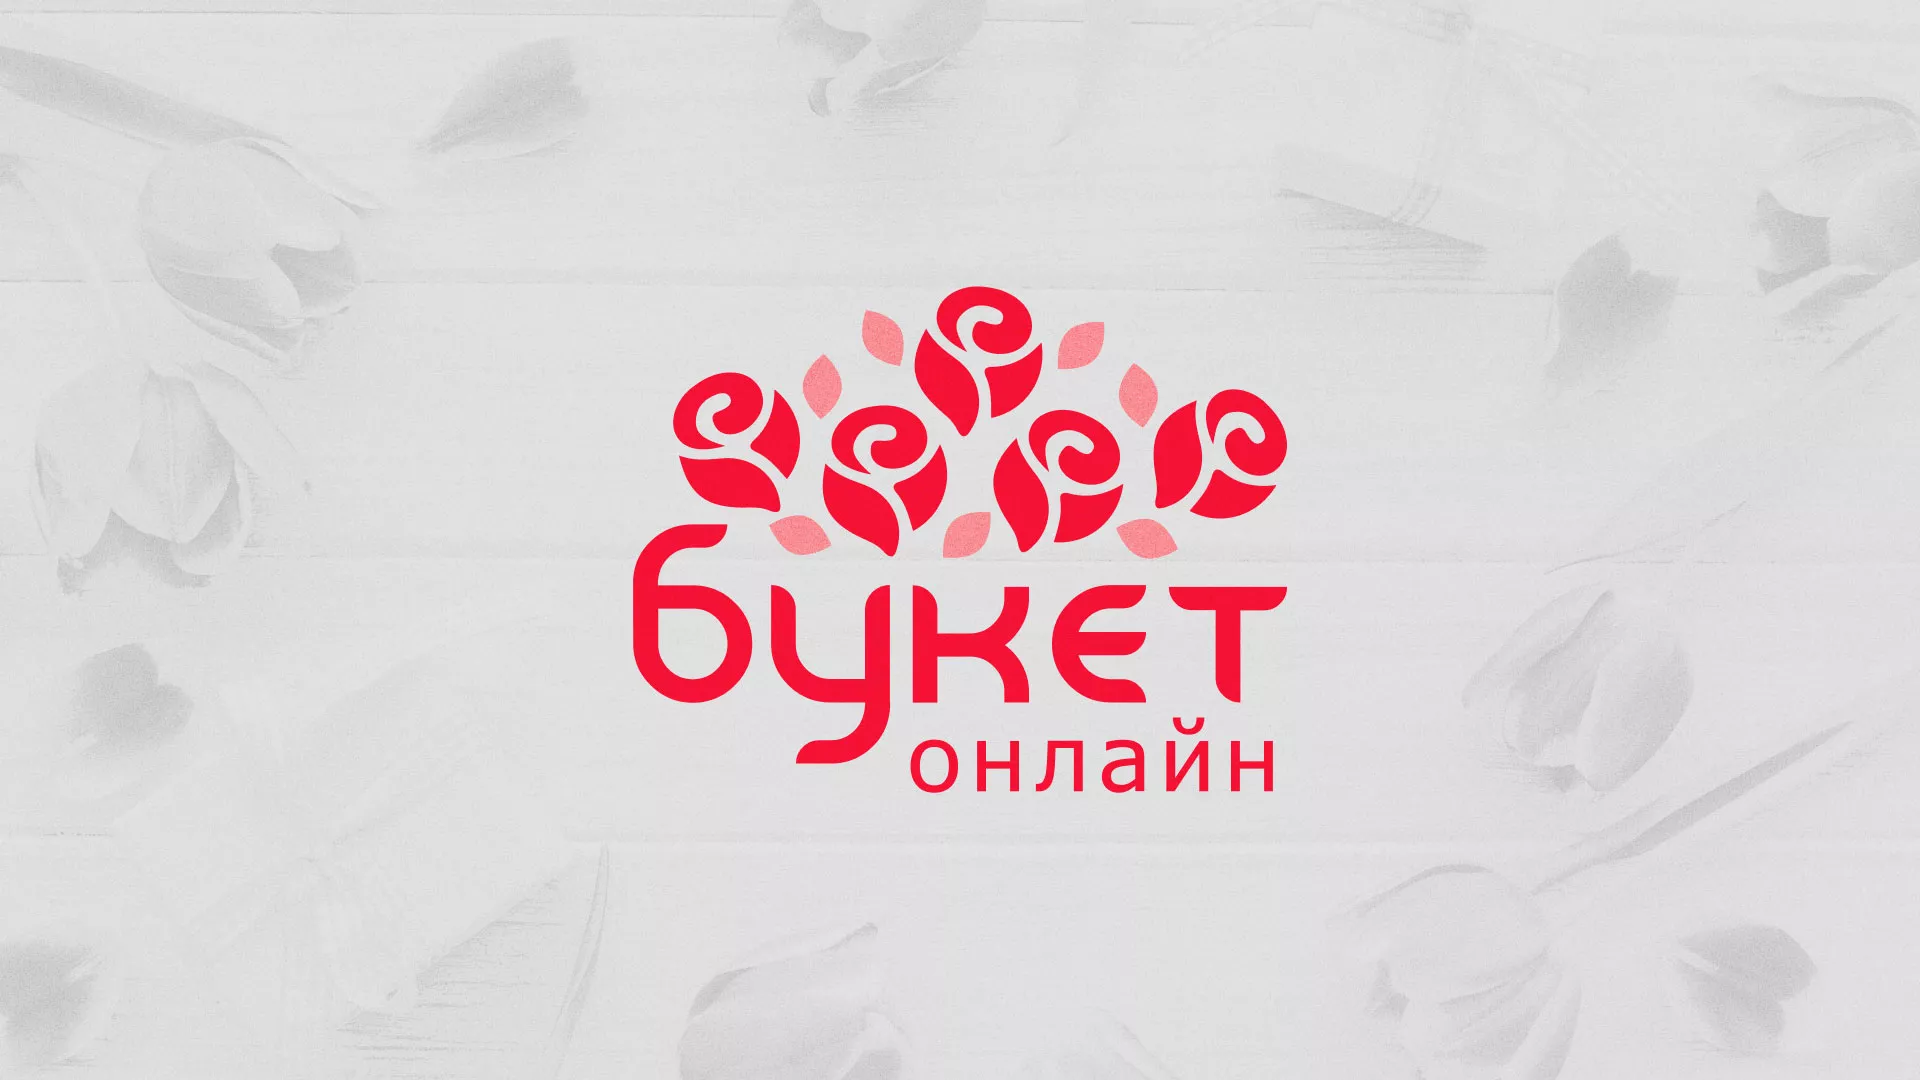 Создание интернет-магазина «Букет-онлайн» по цветам в Котовске